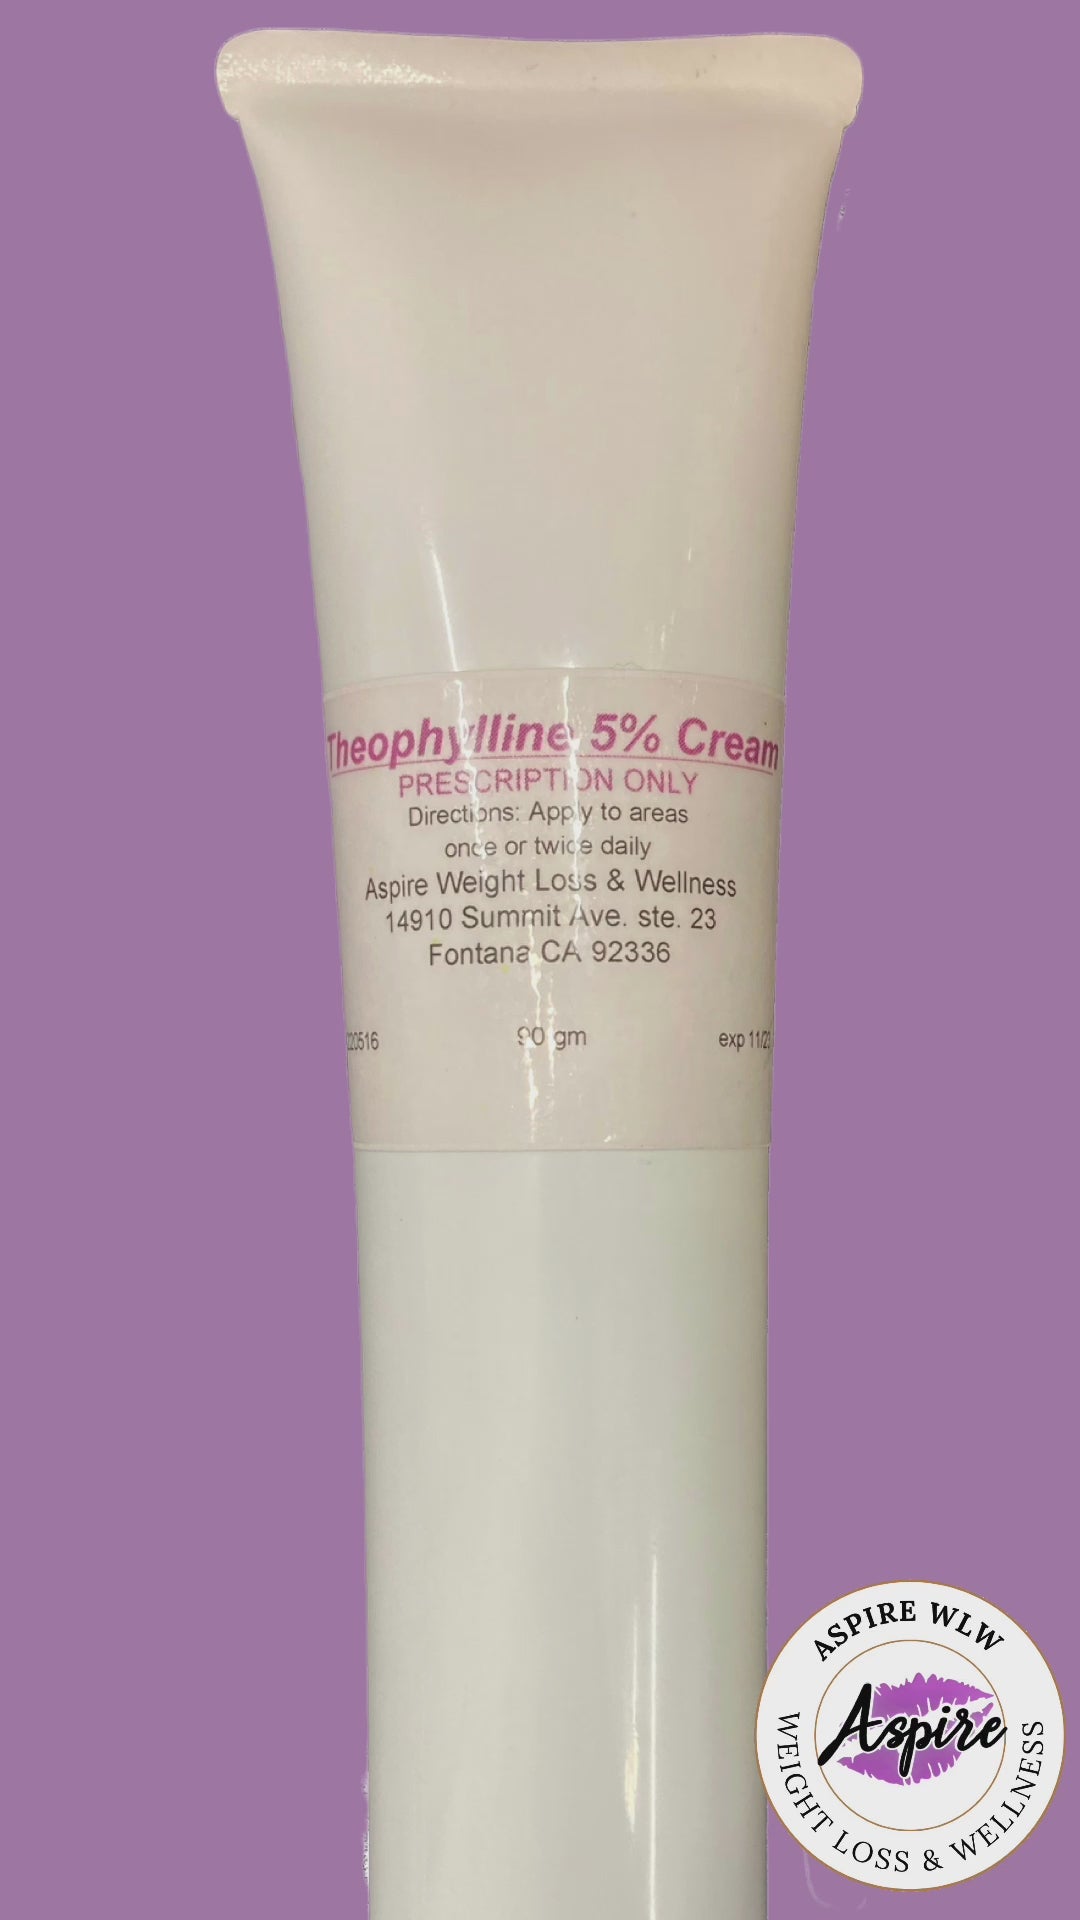 Fat Dissolving Cream: Theophylline 5% Cream